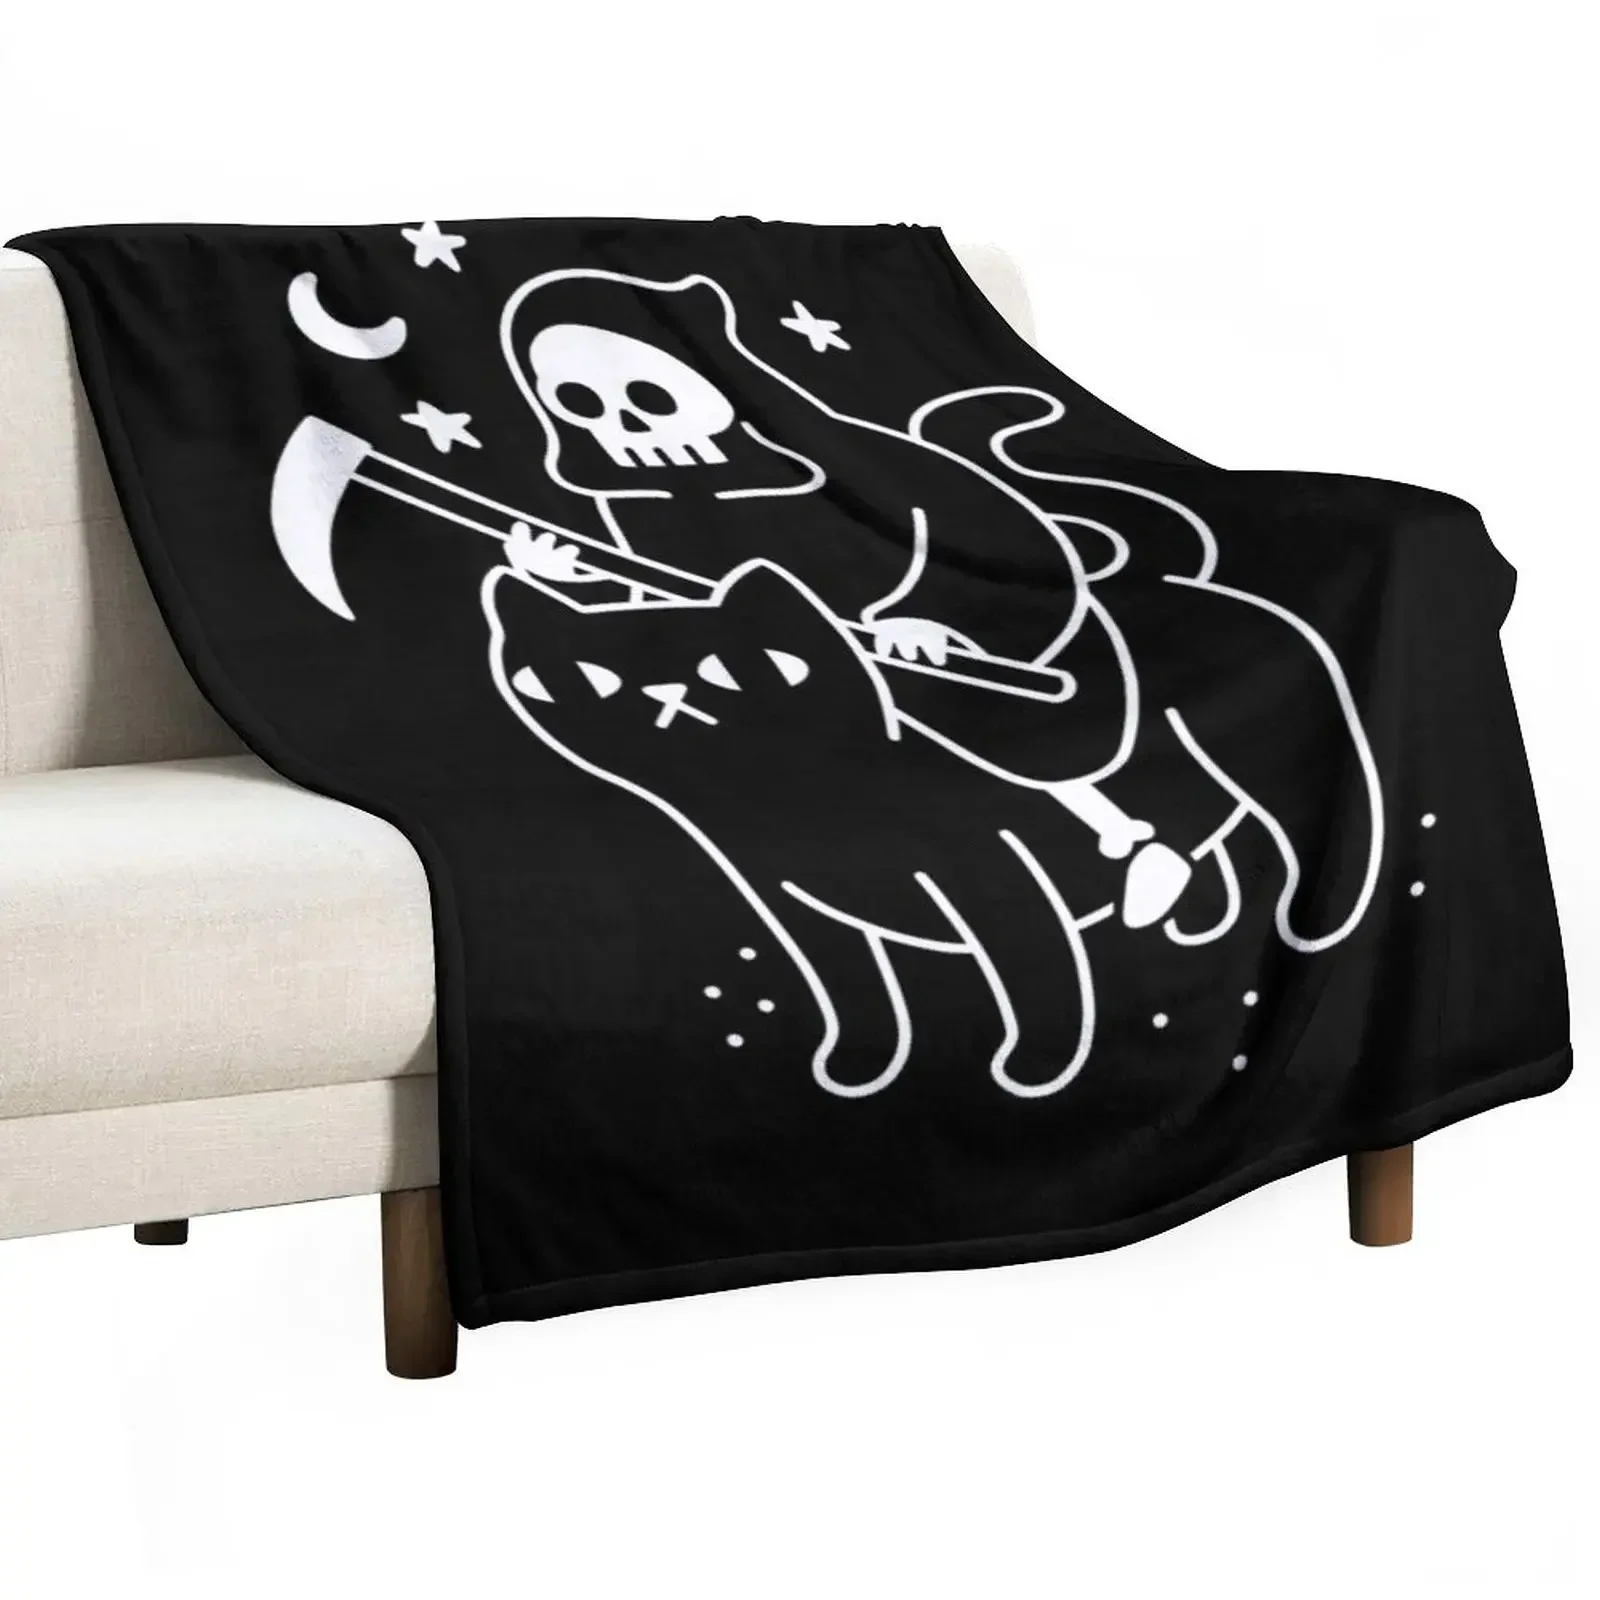 

Одеяло в виде черной кошки Death Rides, мягкое, большое для дивана, тонкие Утяжеленные одеяла